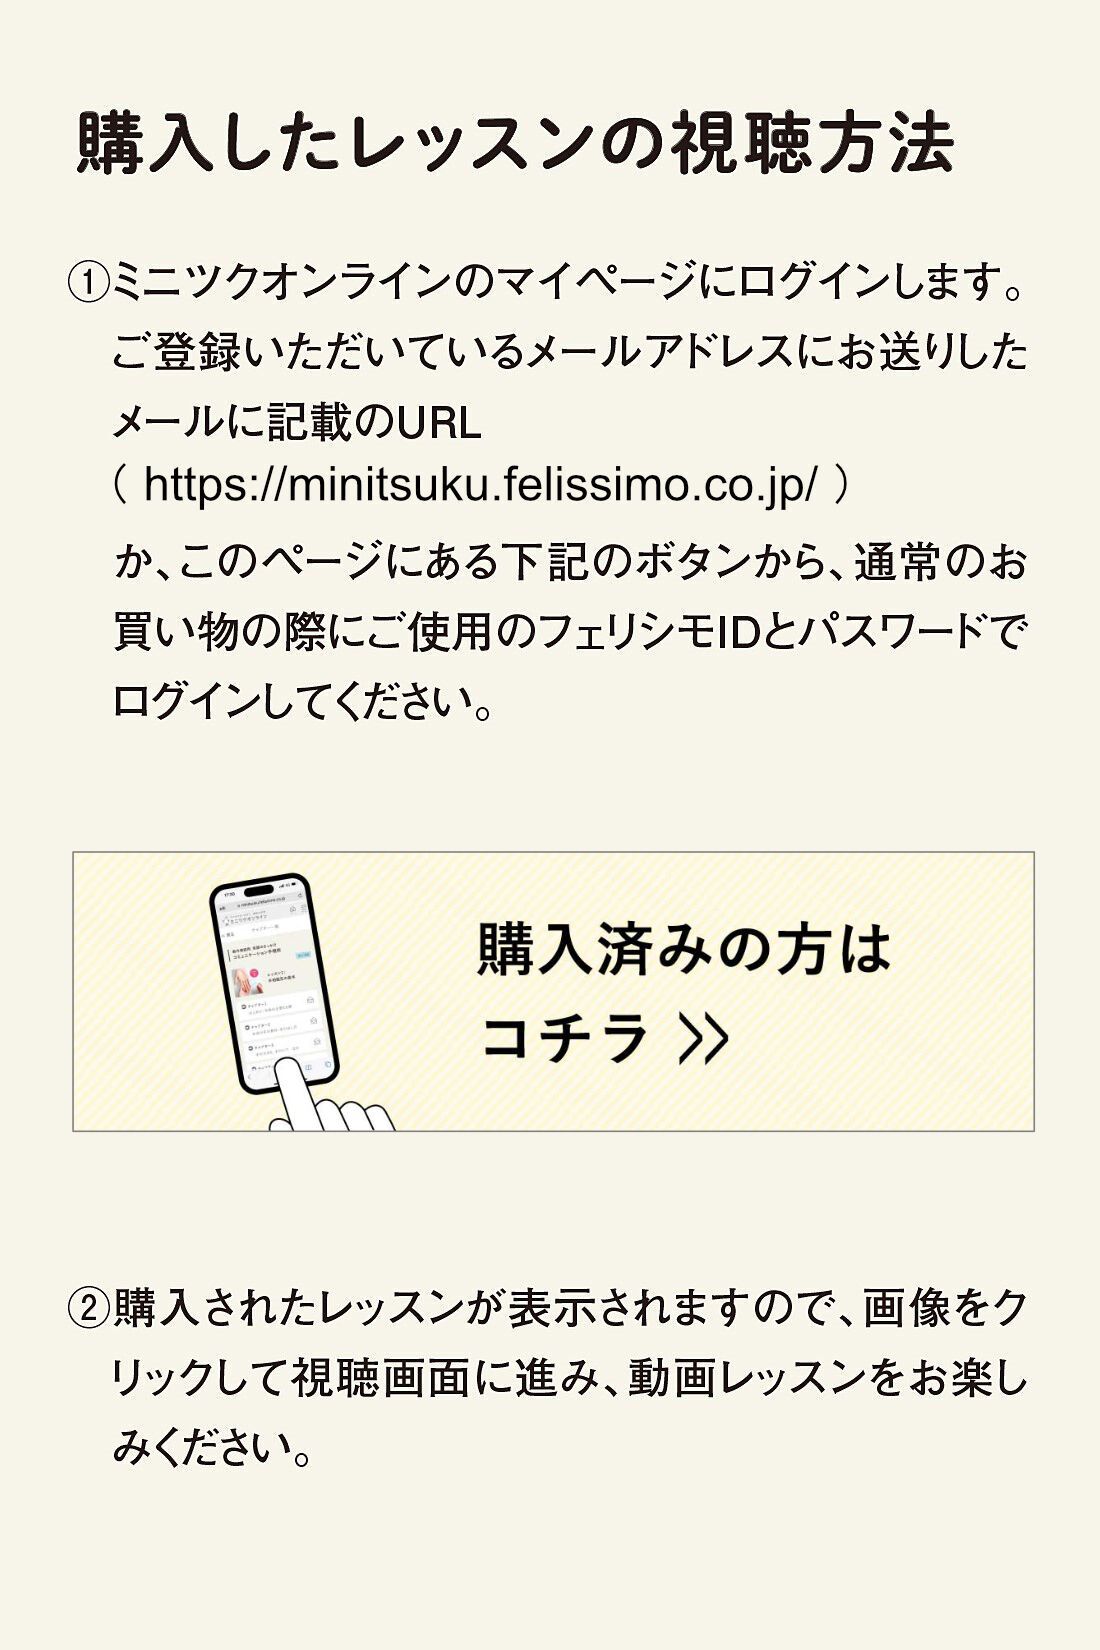 ミニツクオンライン|【ミニツクオンライン版】1日5分の美習慣　女優顔ヨガレッスン|https://minitsuku.felissimo.co.jp/ か、このページに記載のボタンからレッスンページに進んでください。